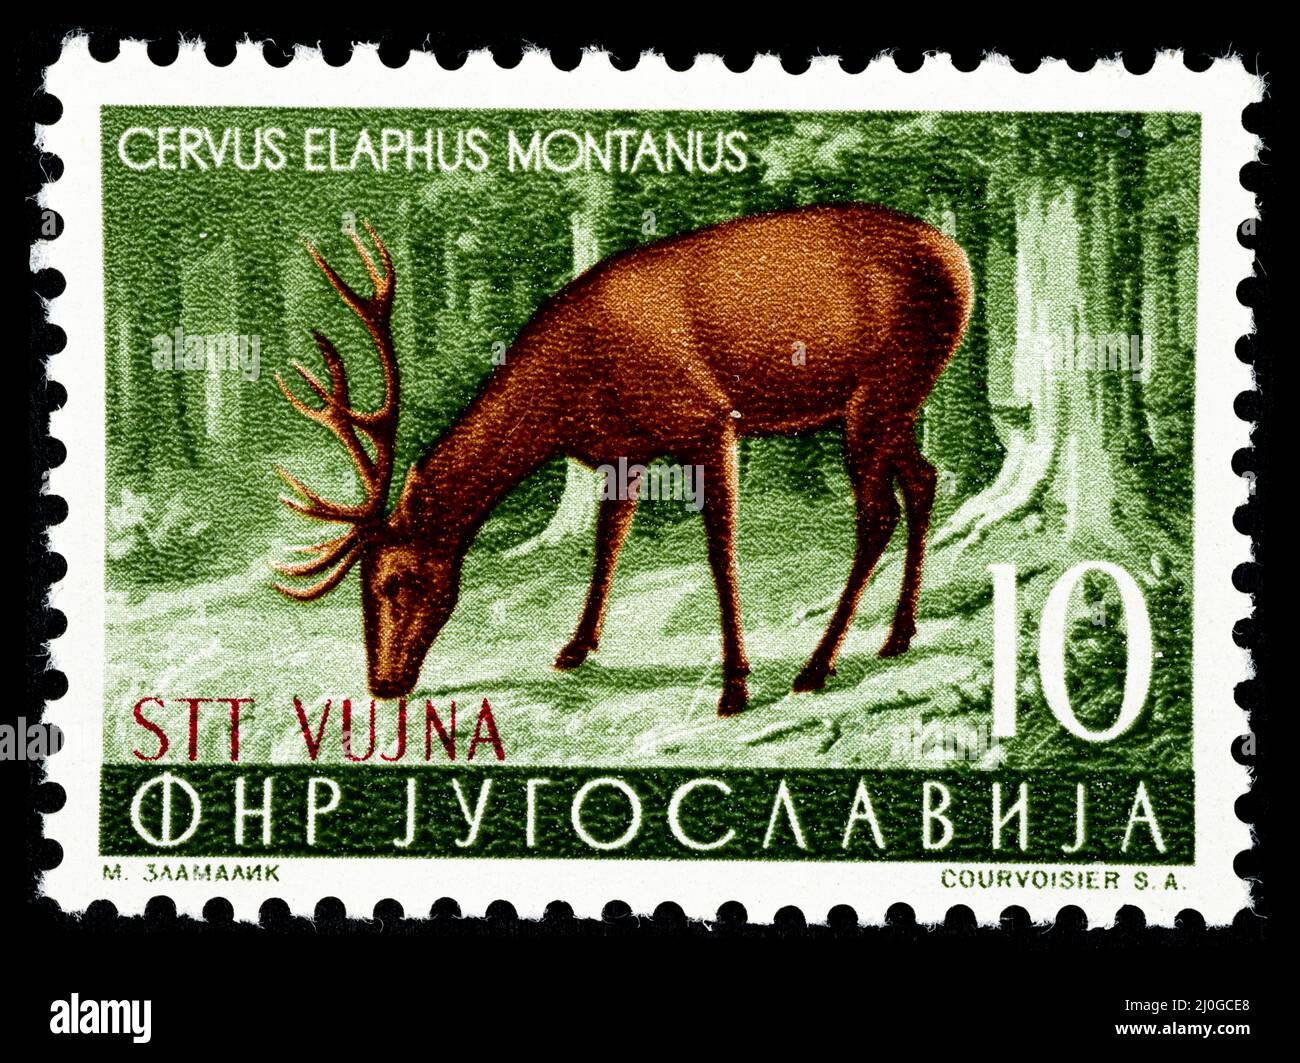 Timbre-poste commémoratif avec l'illustration d'un cerf - Cervus elaphus Montanus émis par l'ex-Yougoslavie surimpression STT VUJNA, Free te Banque D'Images